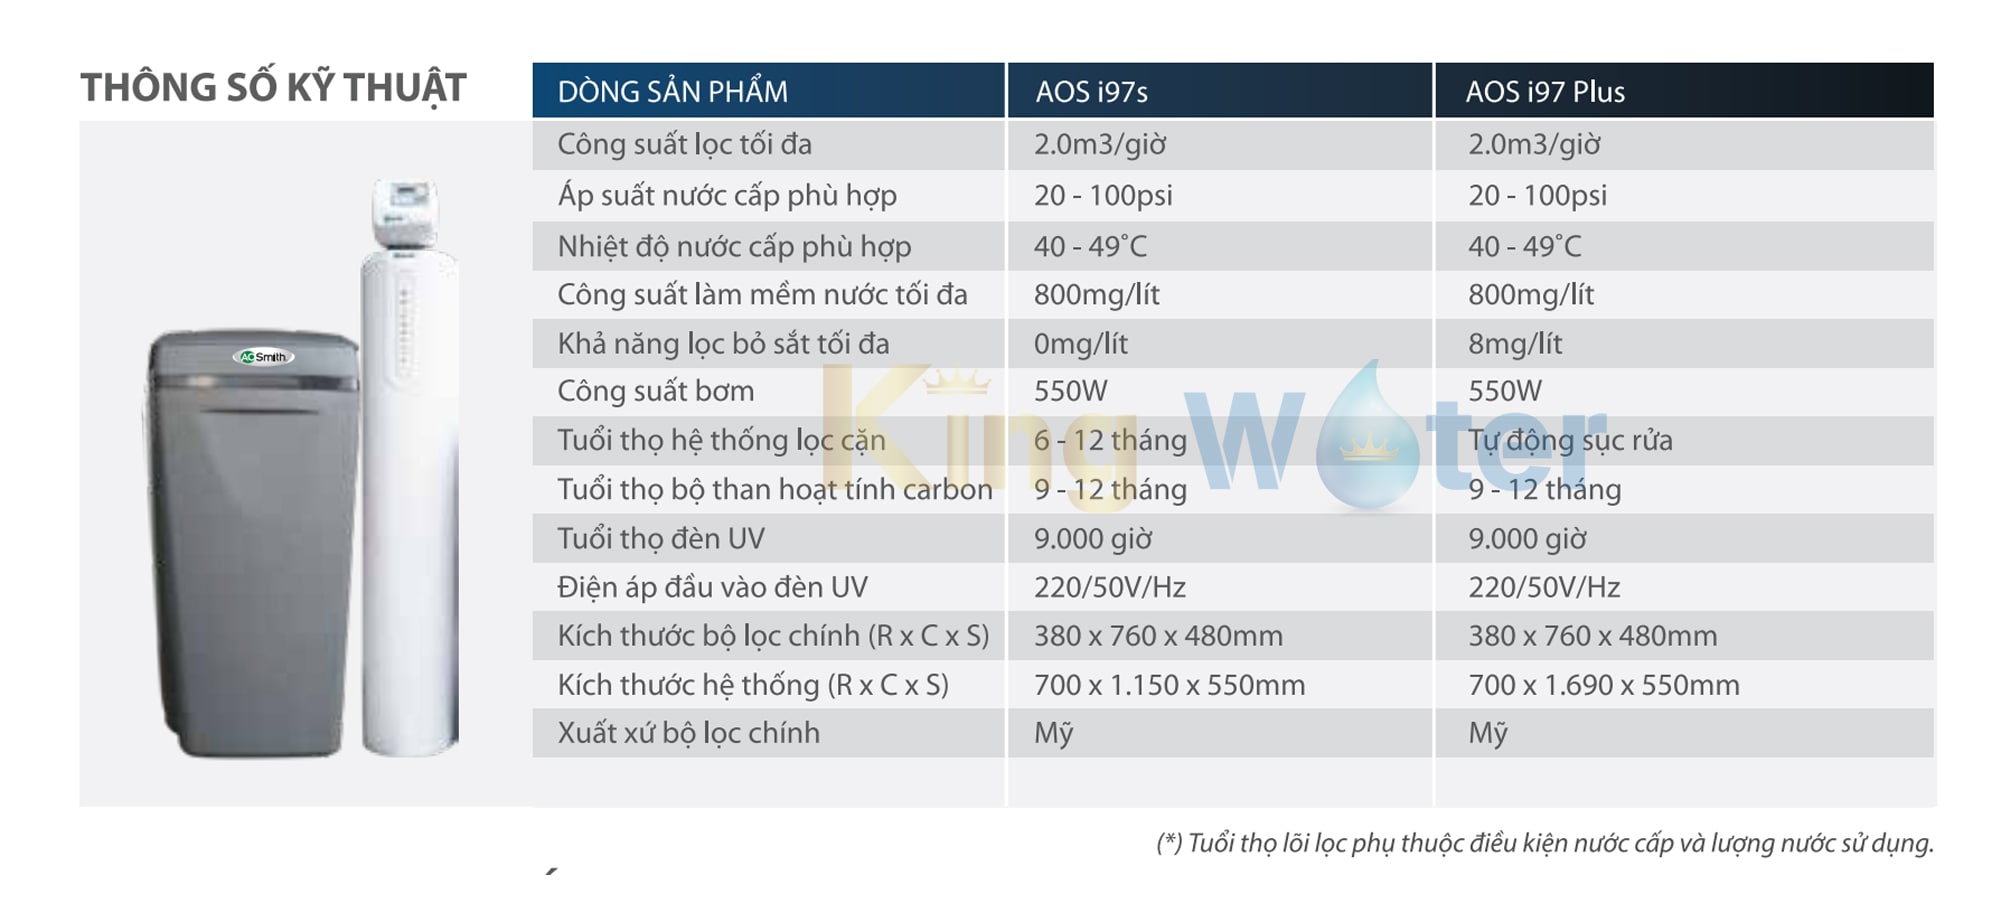 Thông số kĩ thuật máy lọc nước Ao Smith AOS i97 Plus